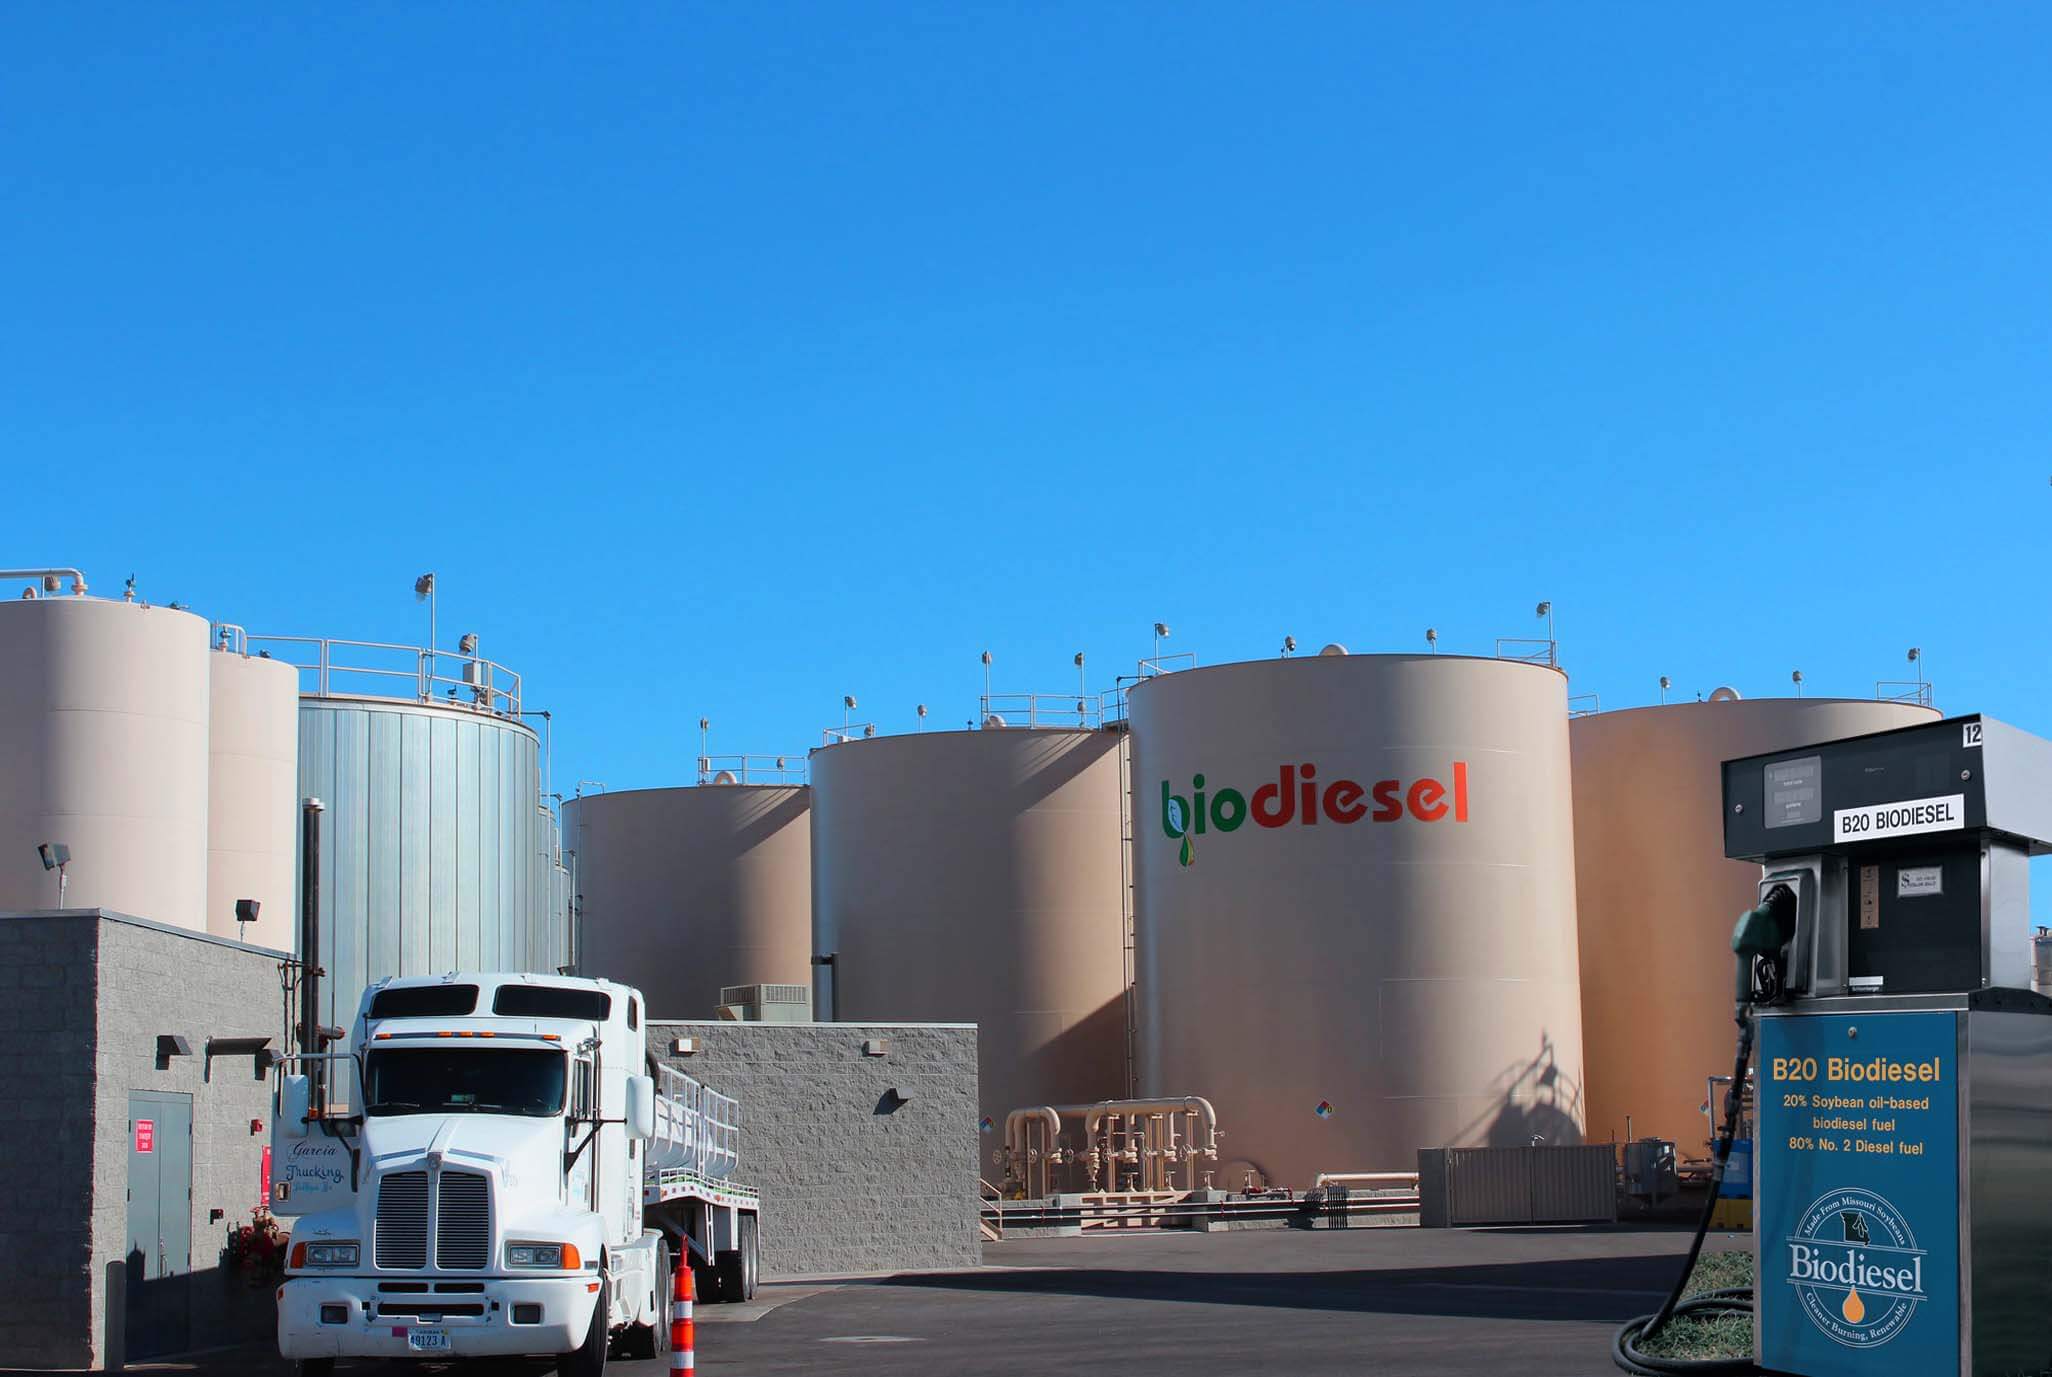 Foto mostrando tanques de armazenamento de biodiesel numa usina sob um céu azul de brigadeiro. No pátio aberto há uma carreta e uma bomba de biodiesel. A foto ilustra a notícia de que a venda de biodiesel superou a meta no novo modelo de comercialização